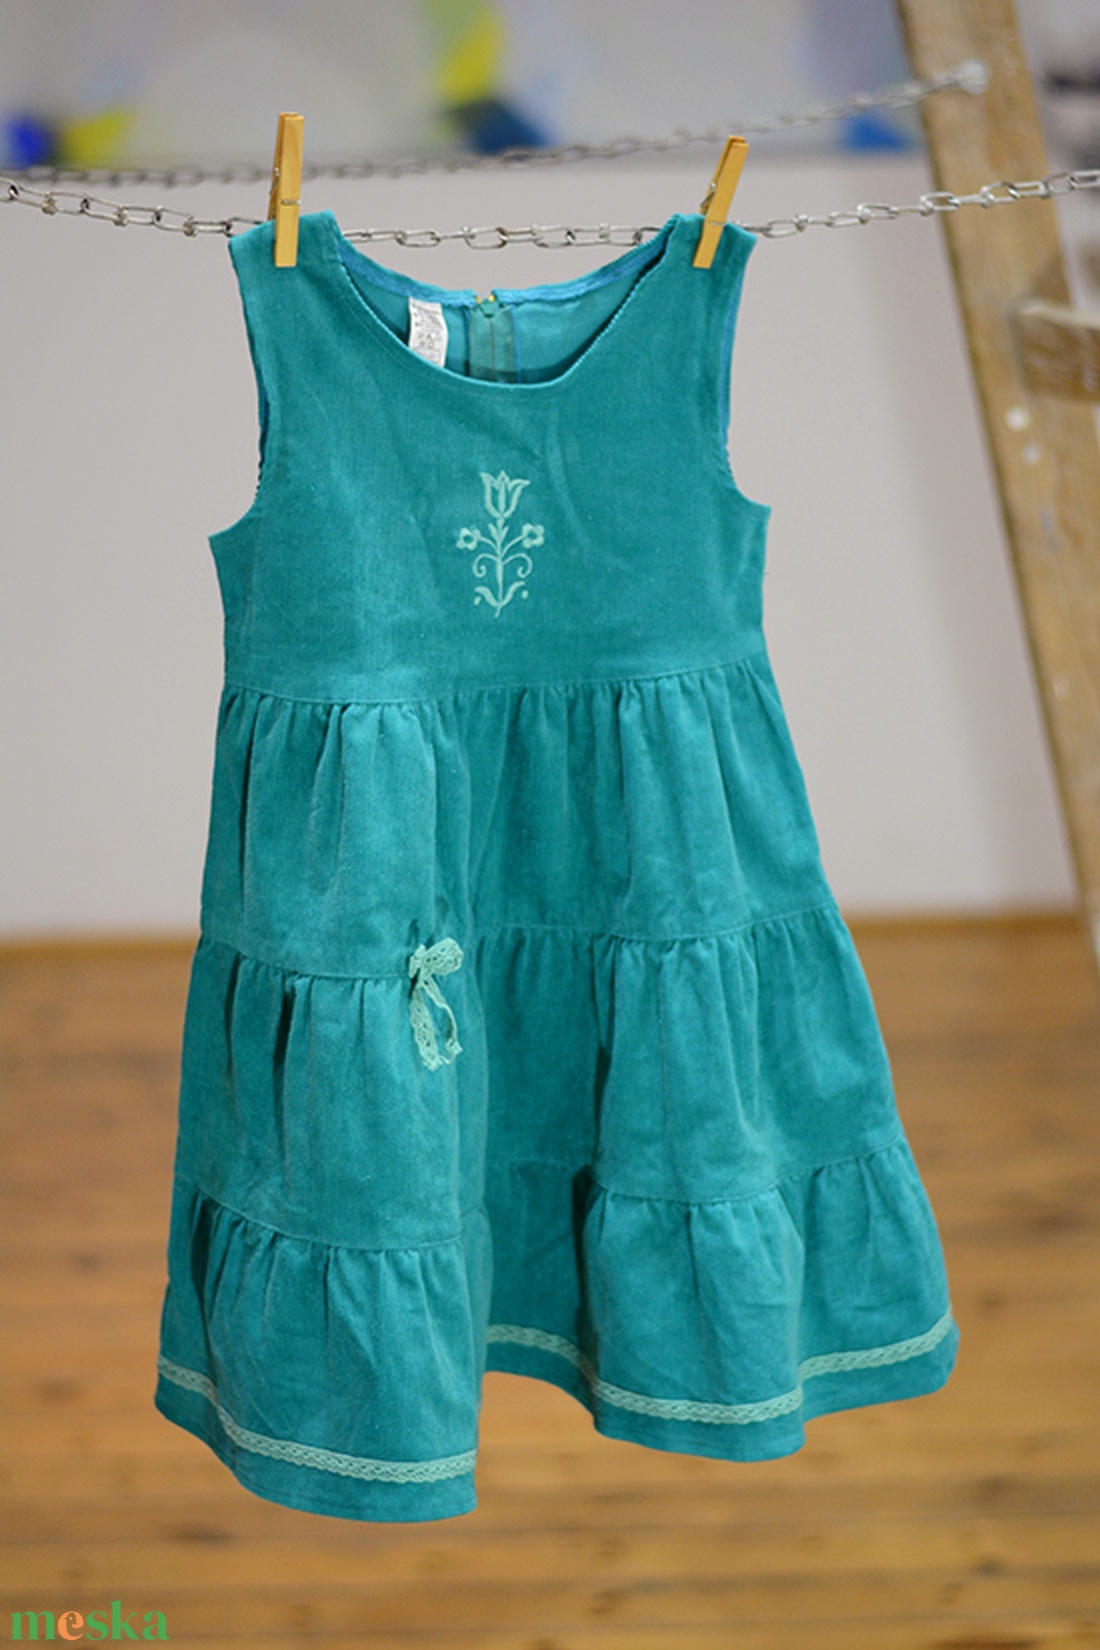 Kord ruha 110-152-es, világos türkiz kék, hímzéssel, pamut csipkével - ruha & divat - babaruha & gyerekruha - ruha - Meska.hu